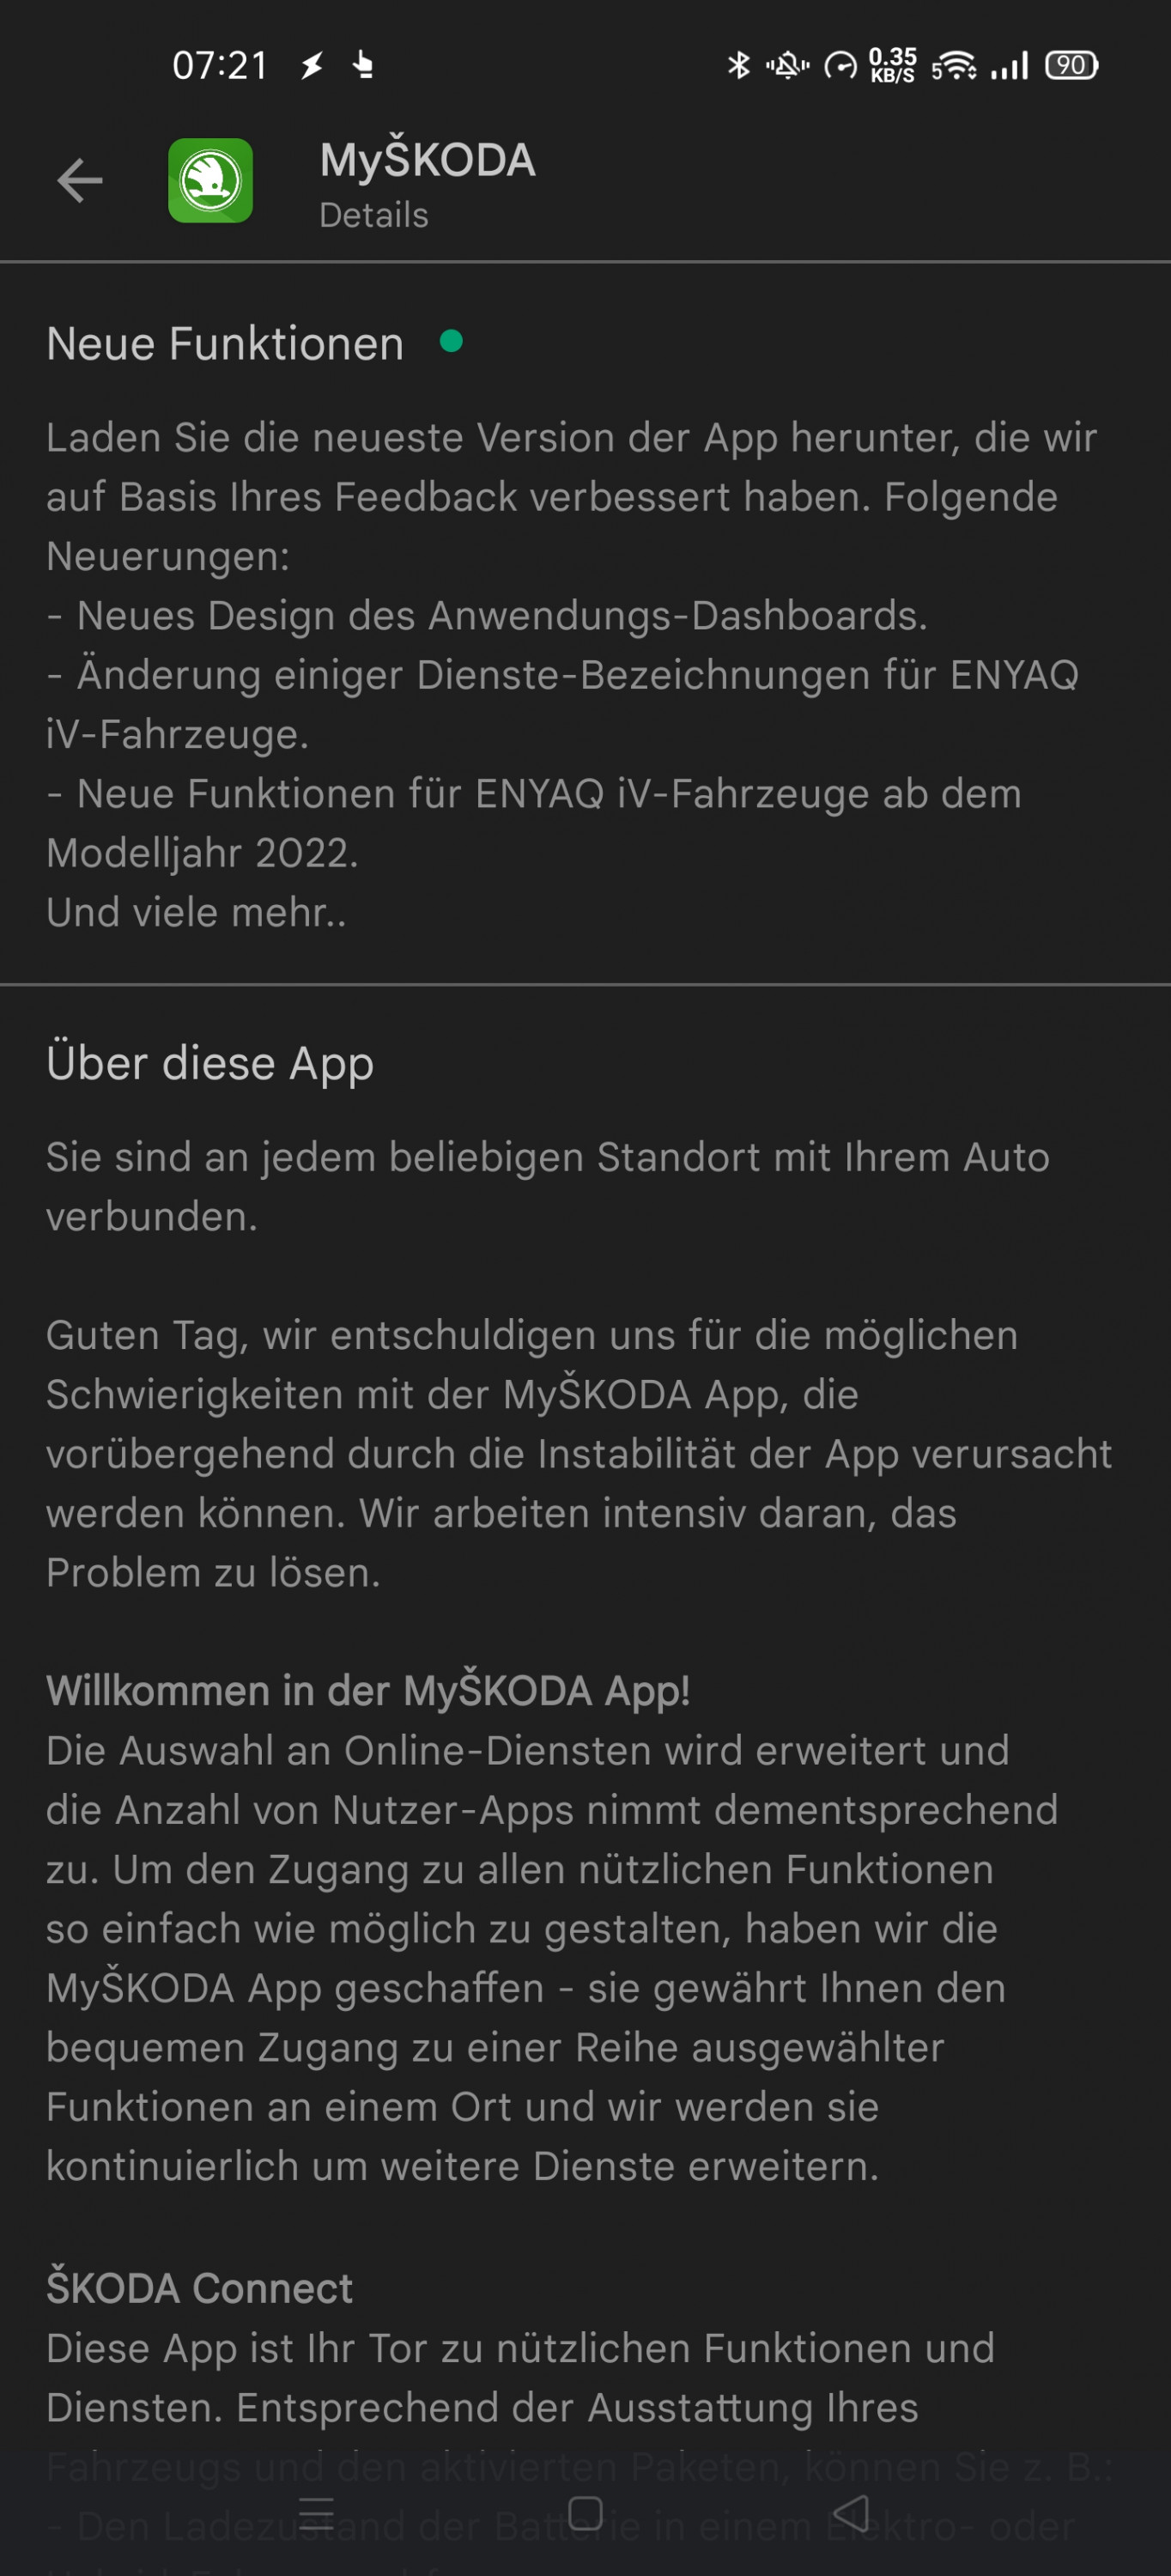 MySkodaApp 5.0.1